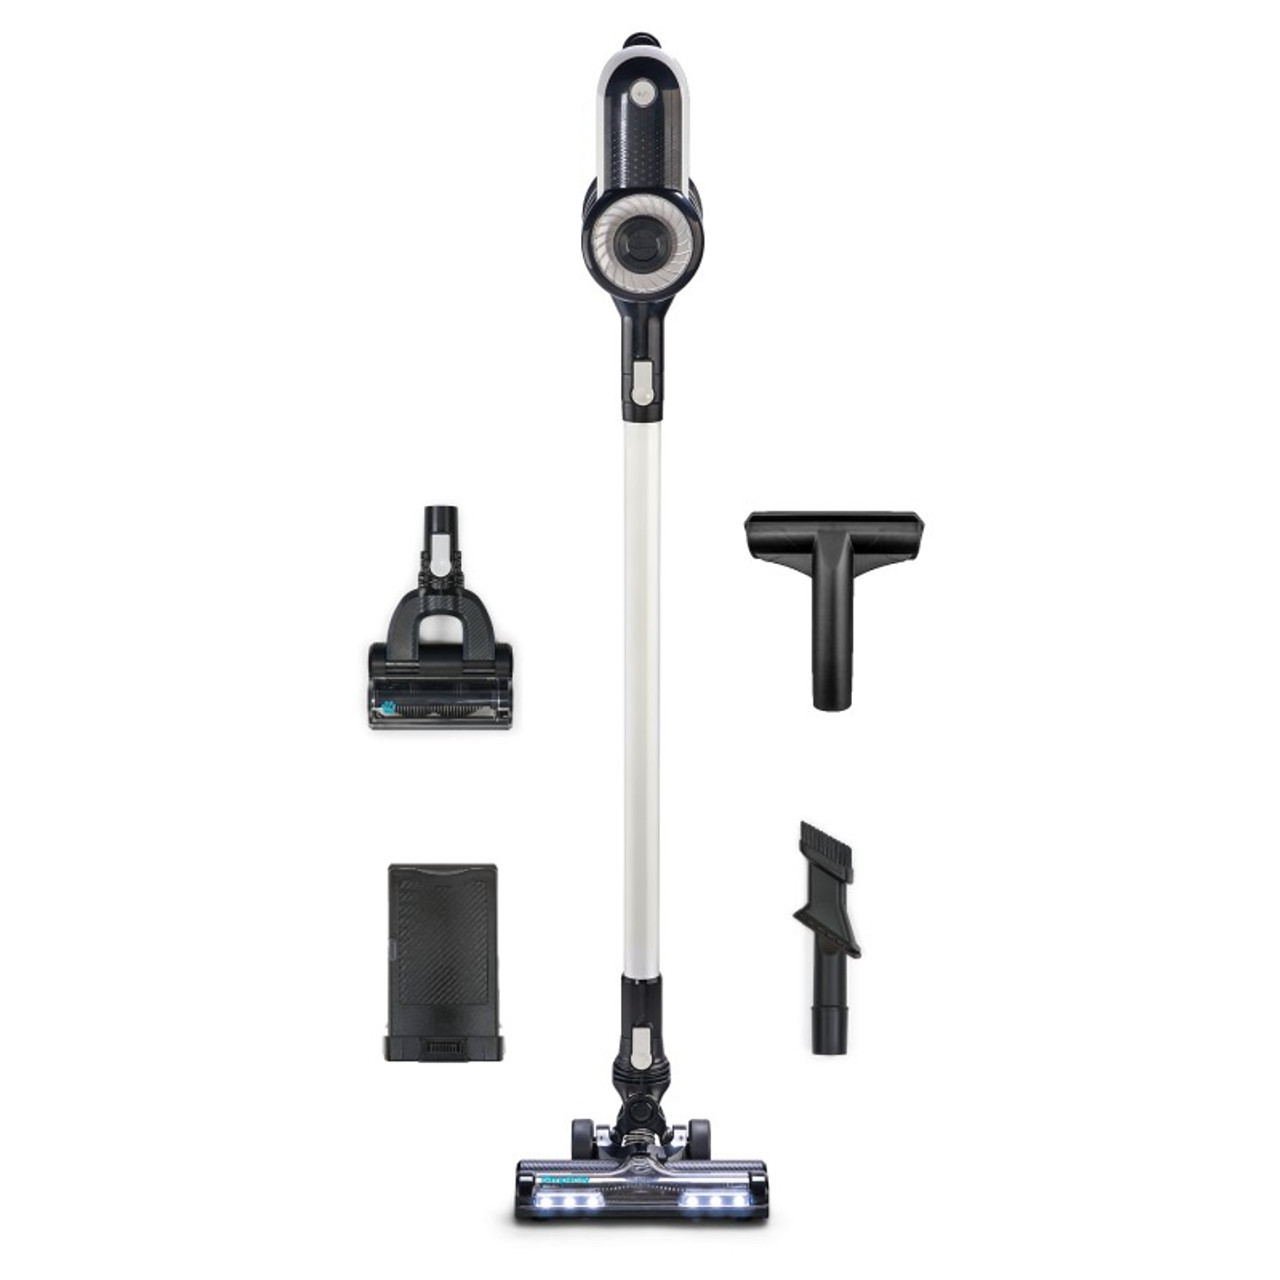 Simplicity S65 Premium Cordless Stick Vacuum